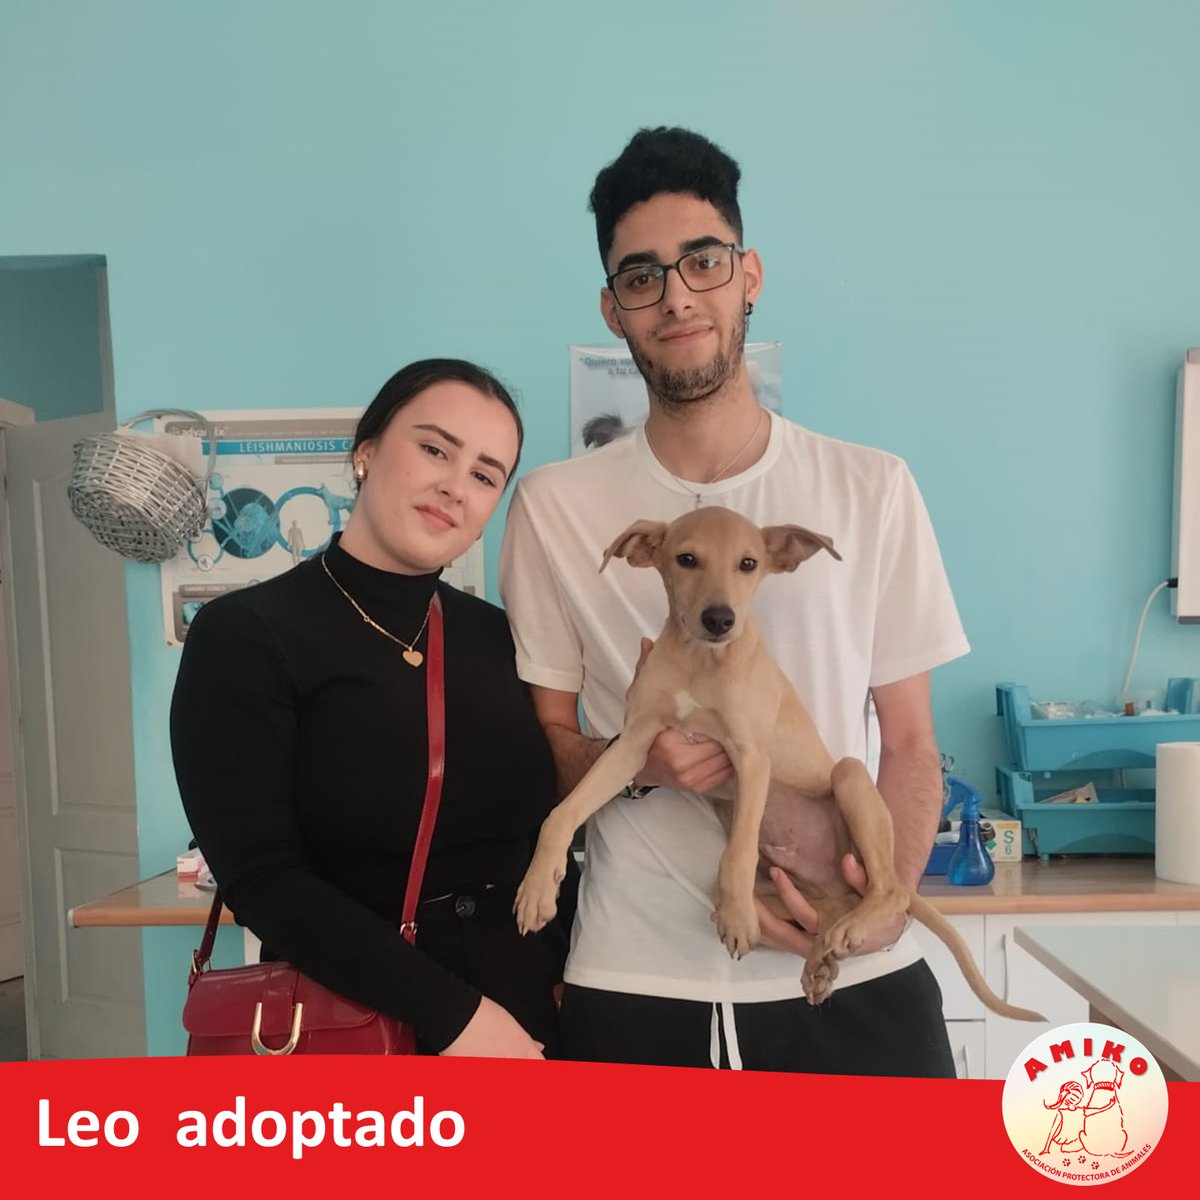 El buenazo y juguetón cachorro Pini ahora se llama LEO y ha sido felizmente adoptado.
Gracias Camelia y Adrian, que seáis muy felices juntos.
¡¡¡¡Ya sabéis, adoptar es la mejor satisfacción que existe!!!! 
#nocompresadopta #stopabandonos #amikoprotectora